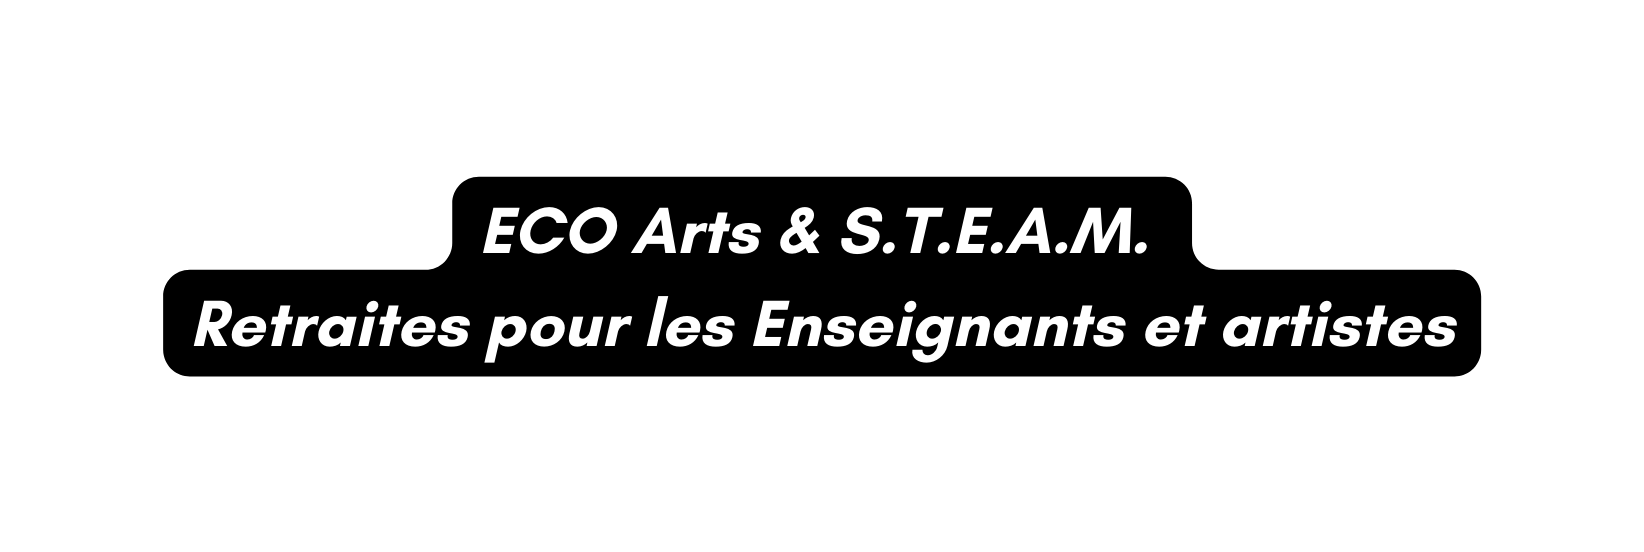 ECO Arts S T E A M Retraites pour les Enseignants et artistes